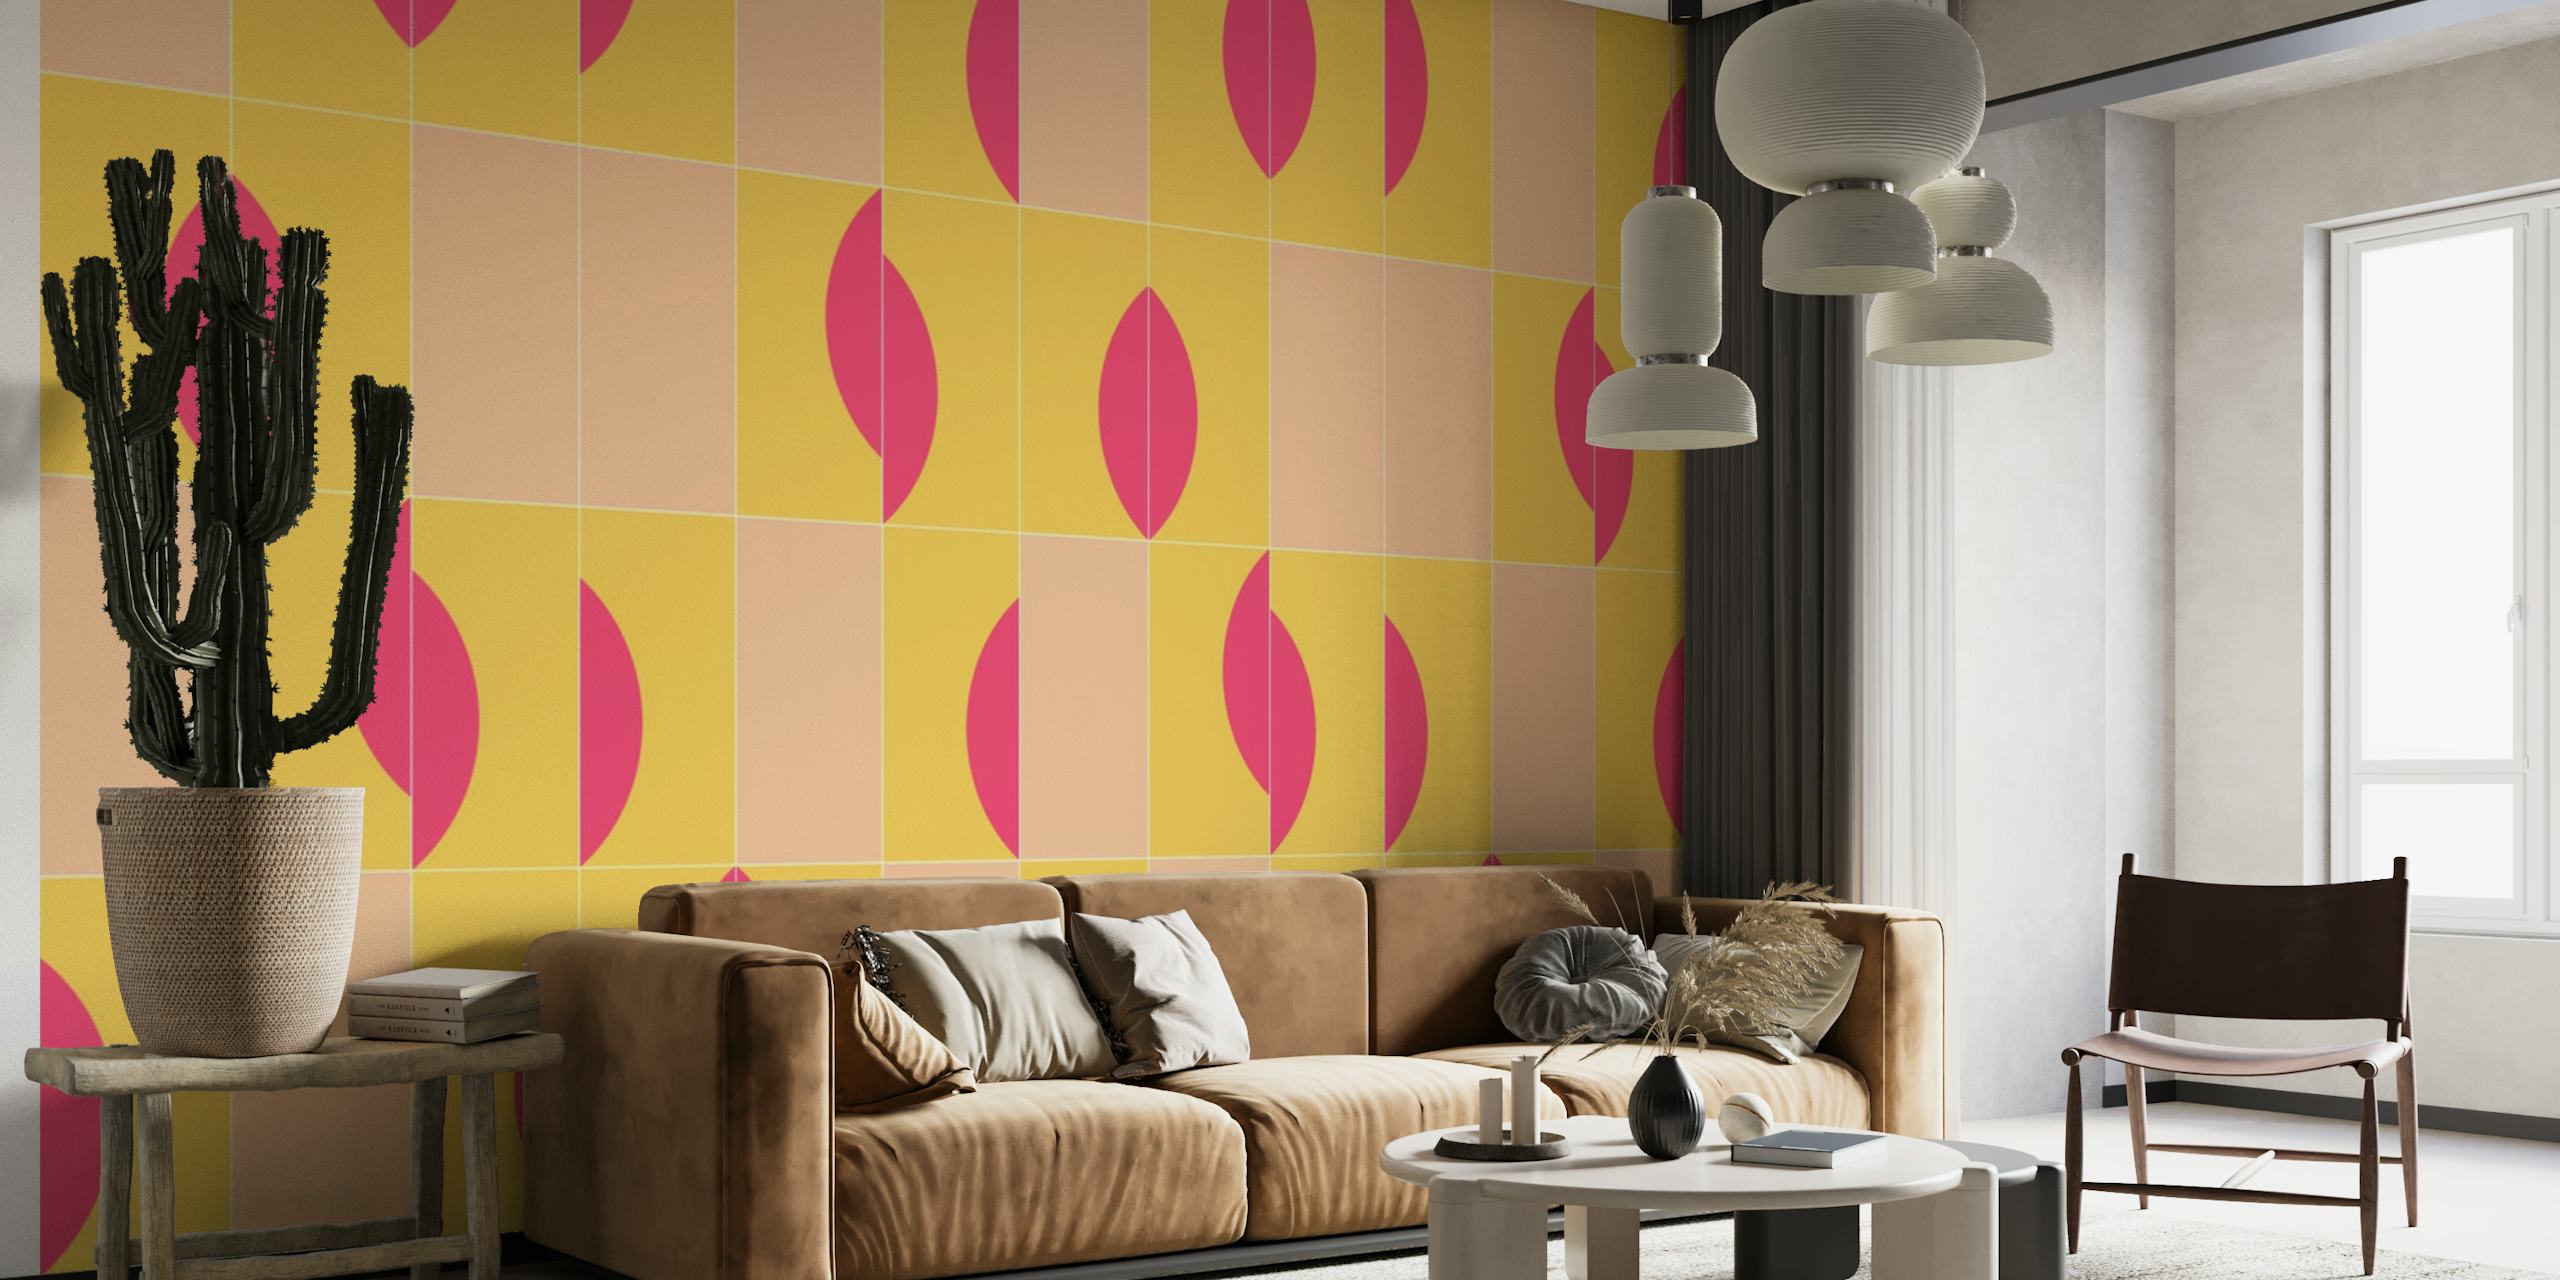 Sunny Tiles 02 wallpaper